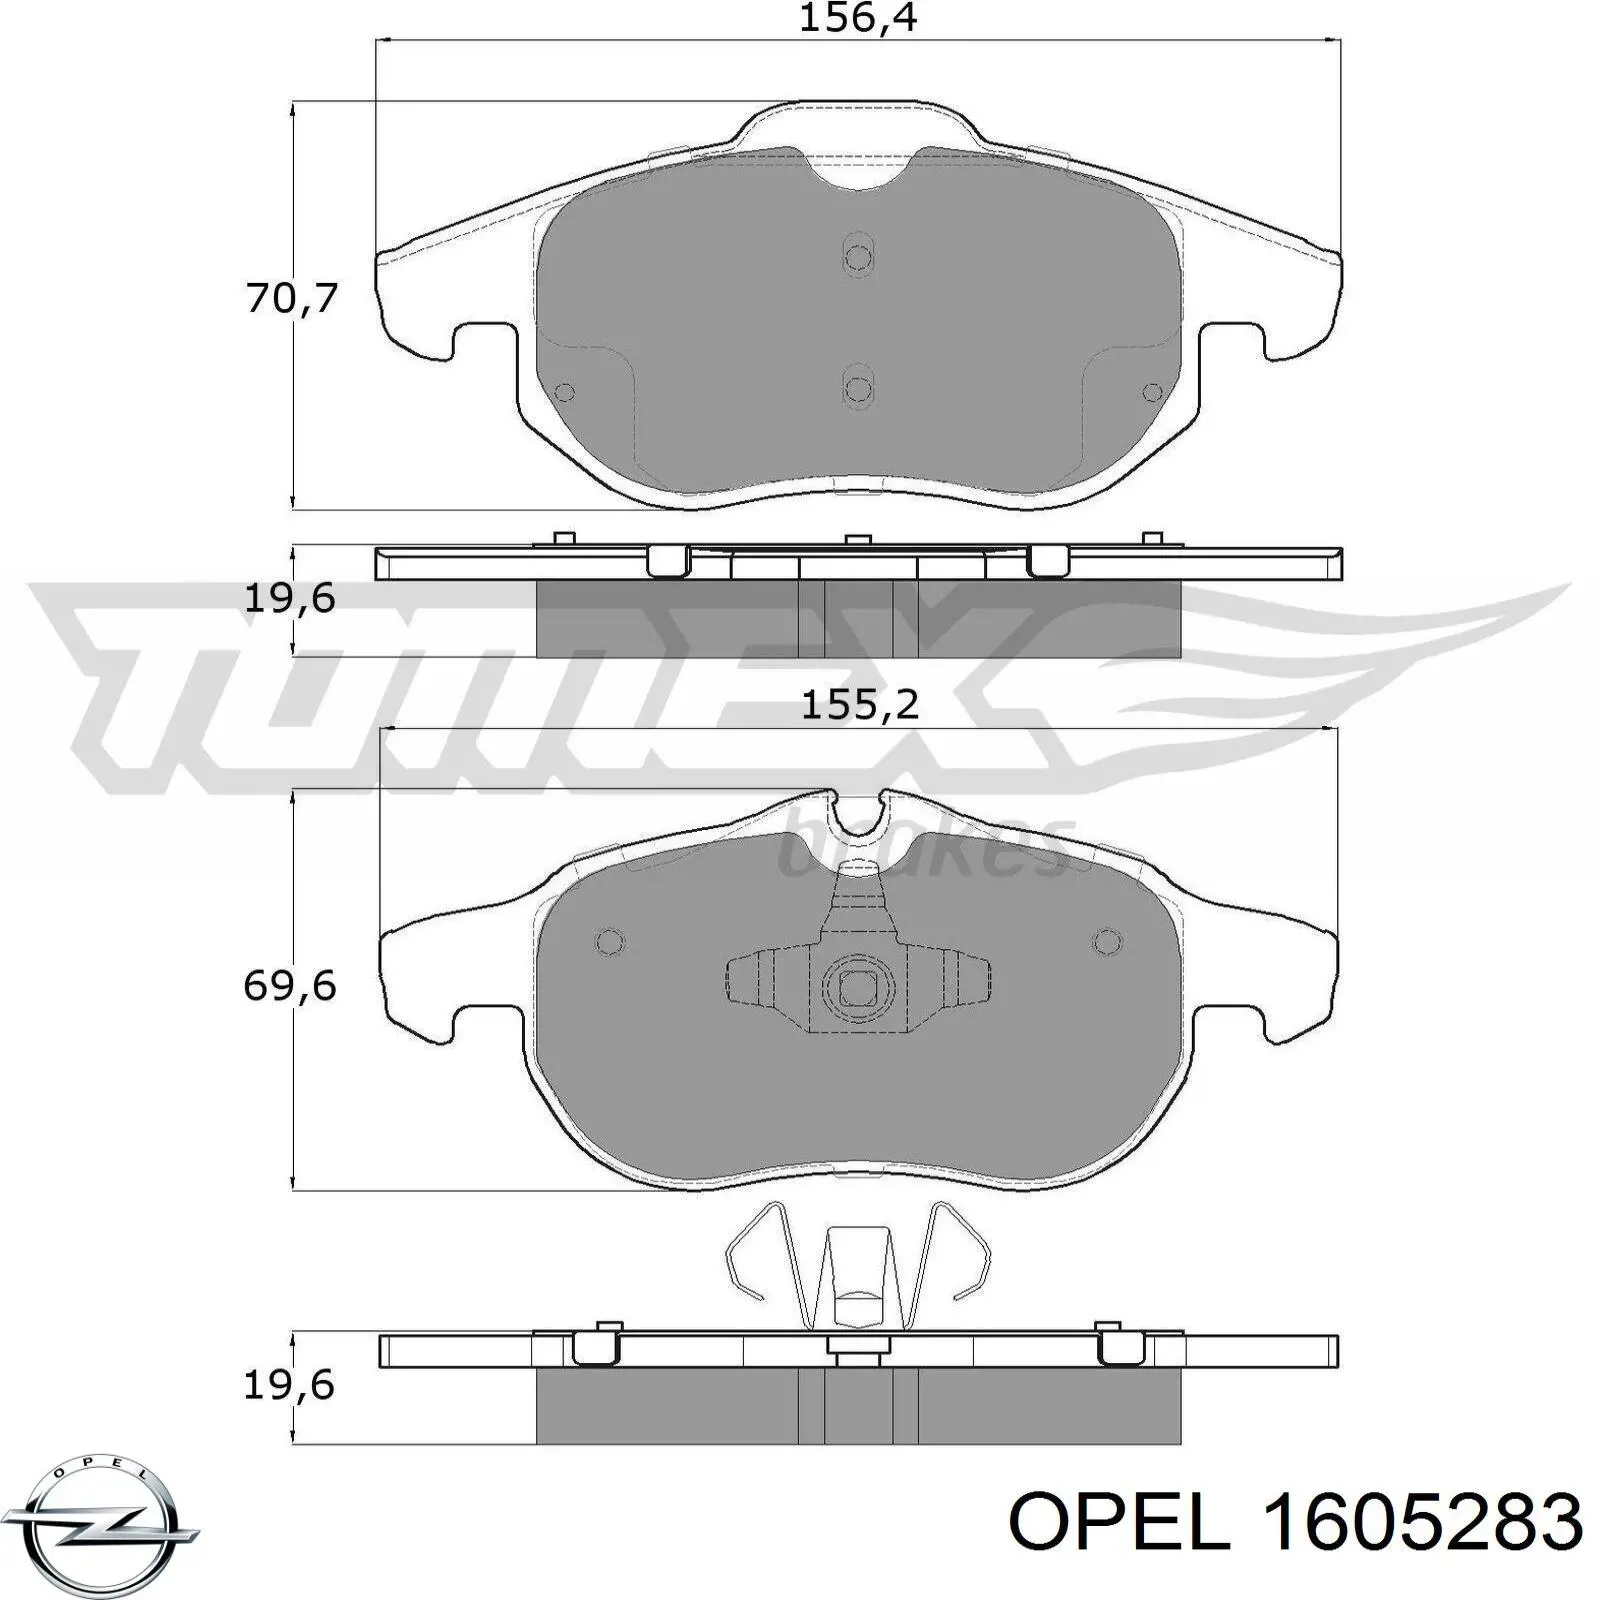 1605283 Opel колодки тормозные передние дисковые